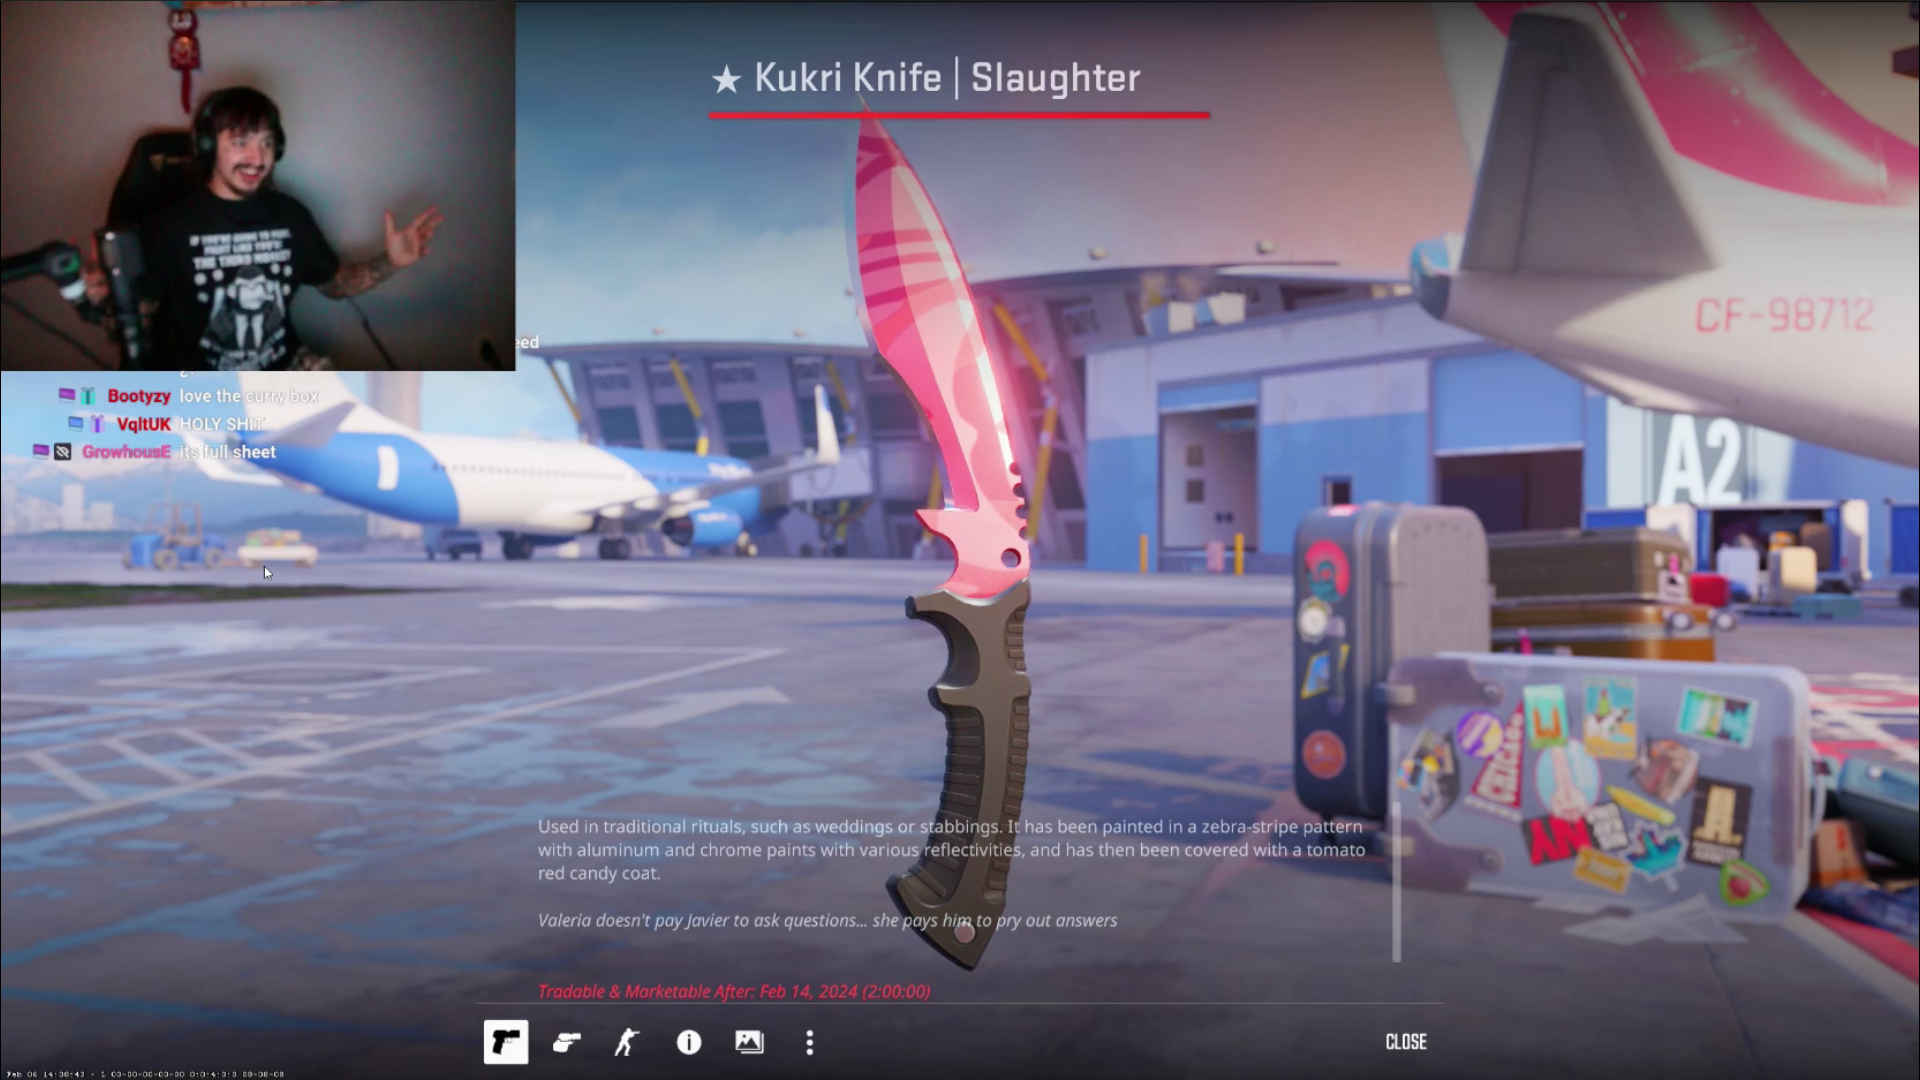 Стример turbine и заветный нож – Kukri Knife | Slaughter